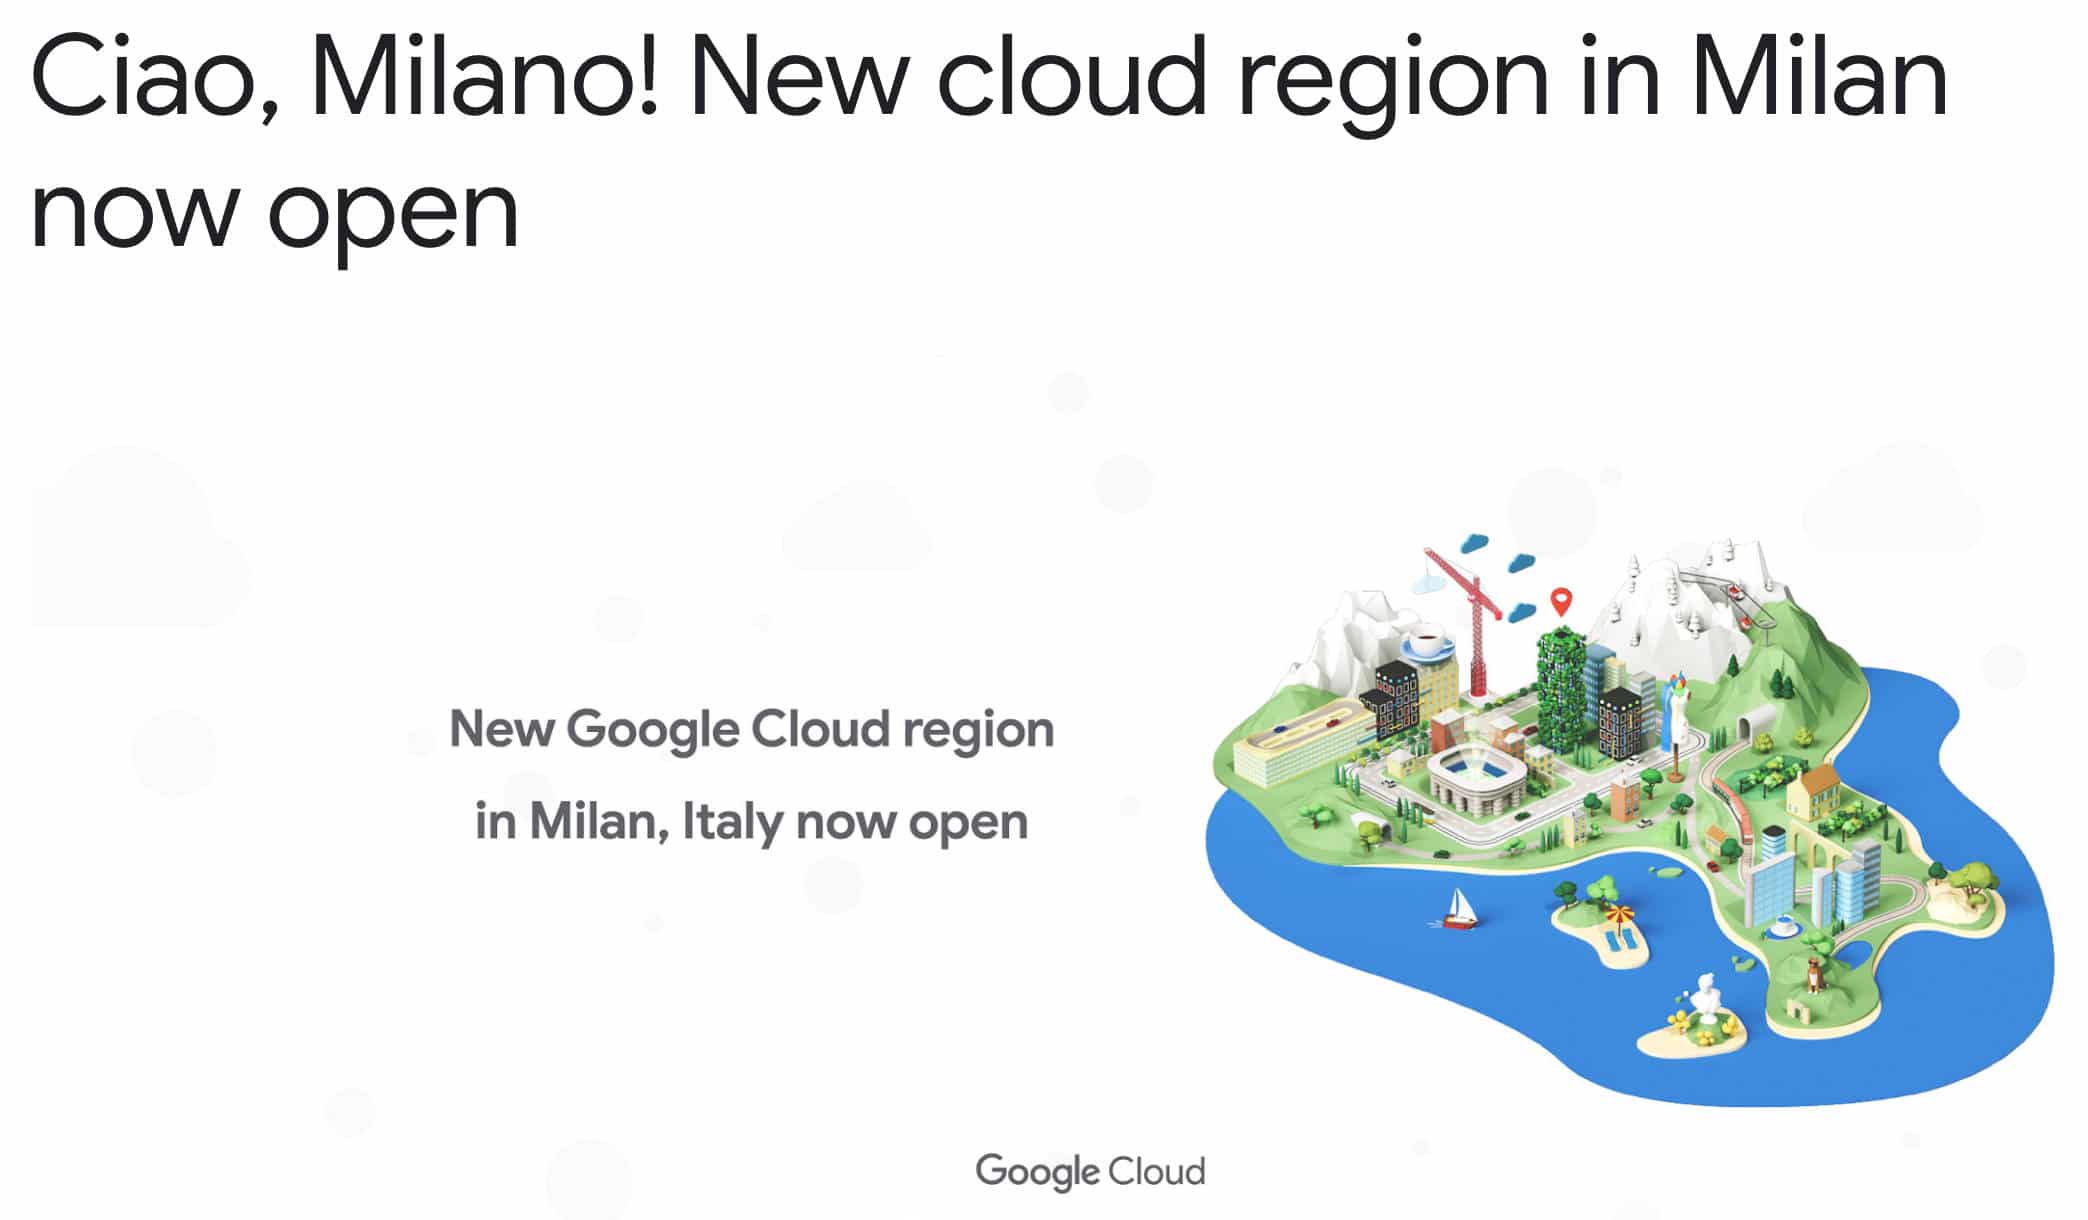 Una nueva región Google Cloud en Milán.